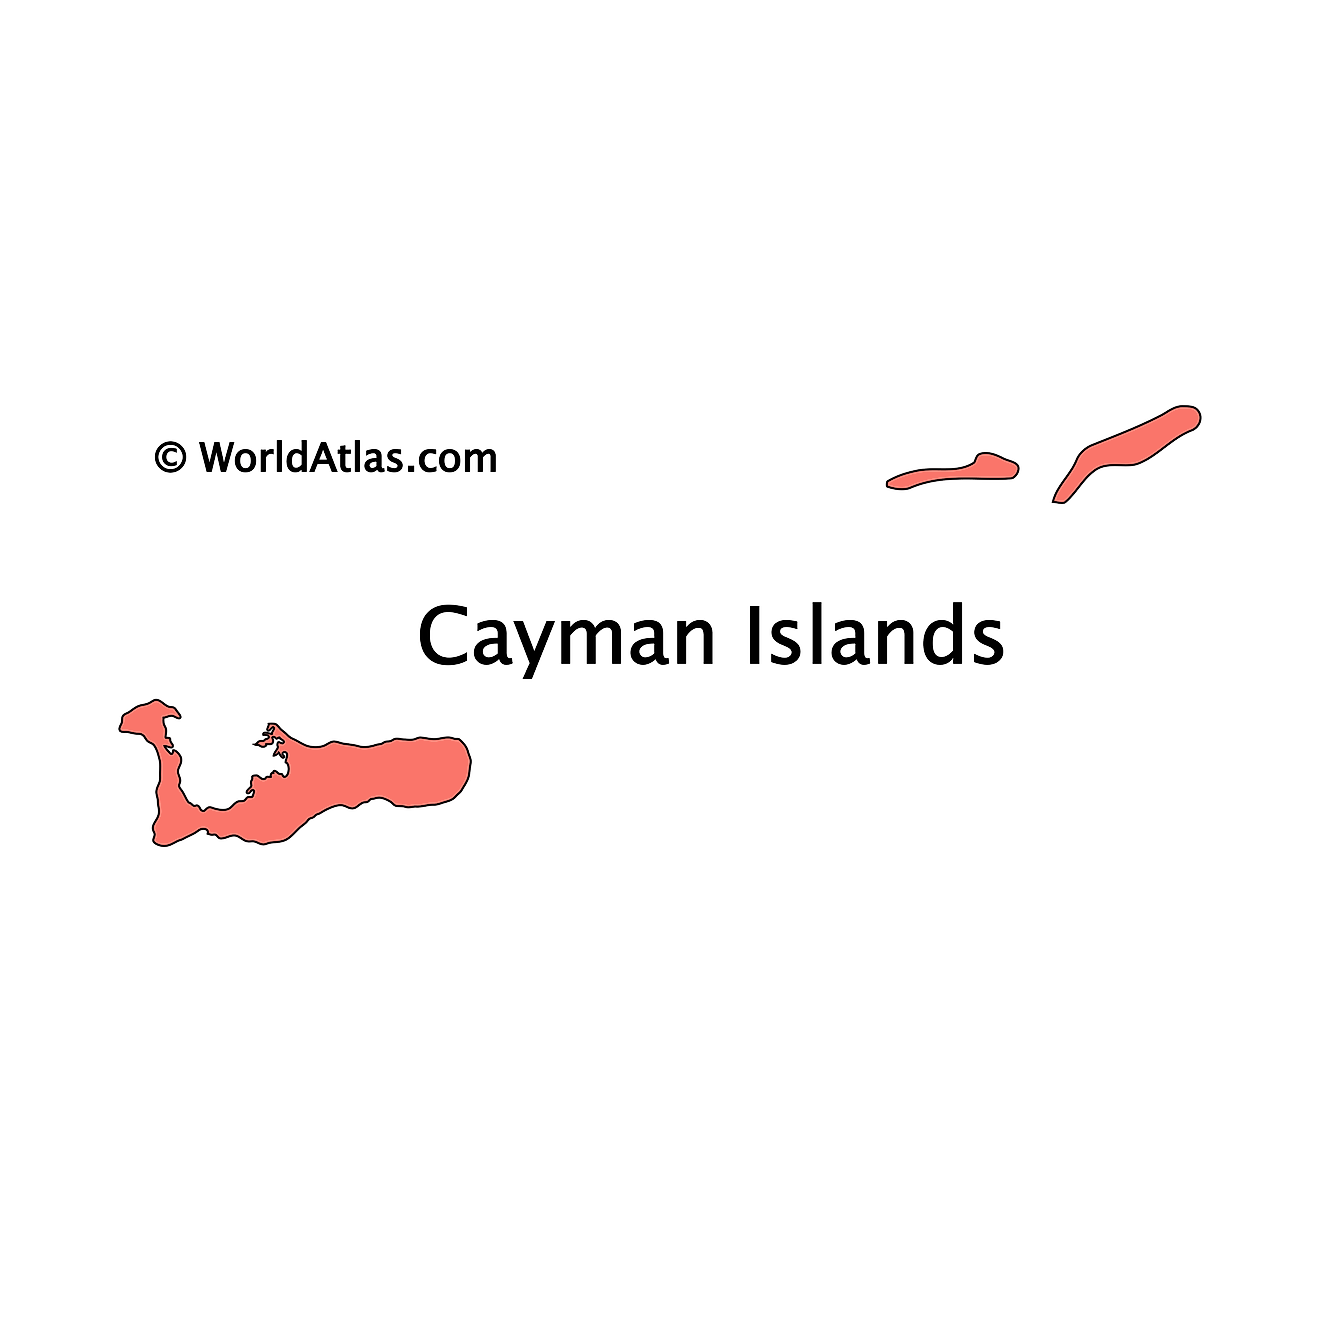 Mapa de contorno de las Islas Caimán